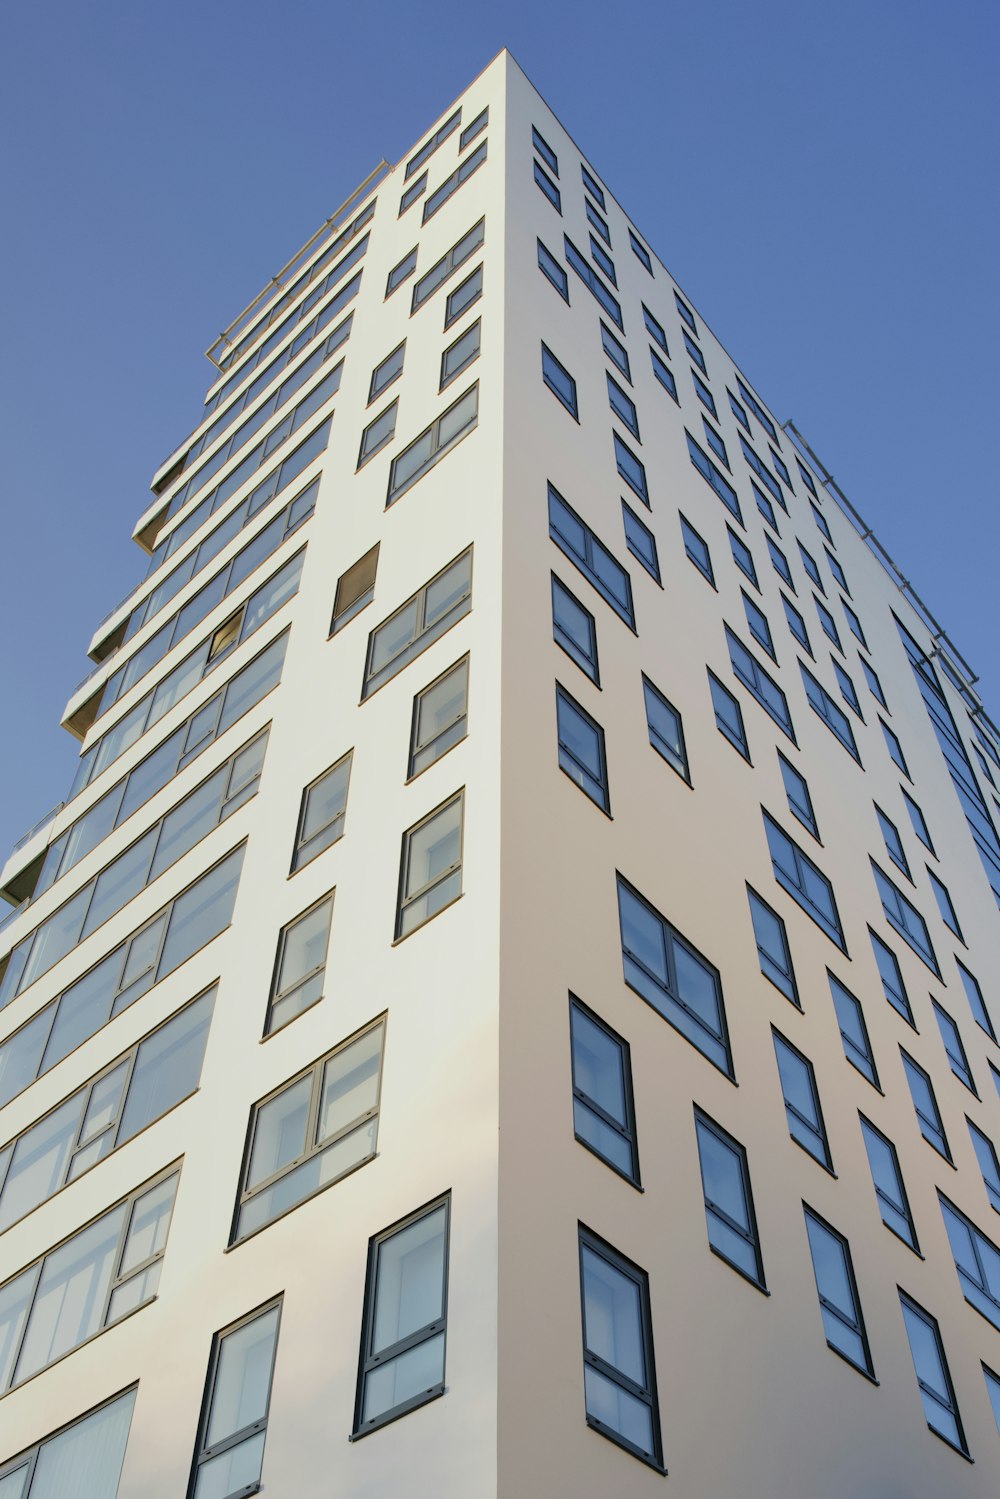 Un edificio alto y blanco con muchas ventanas